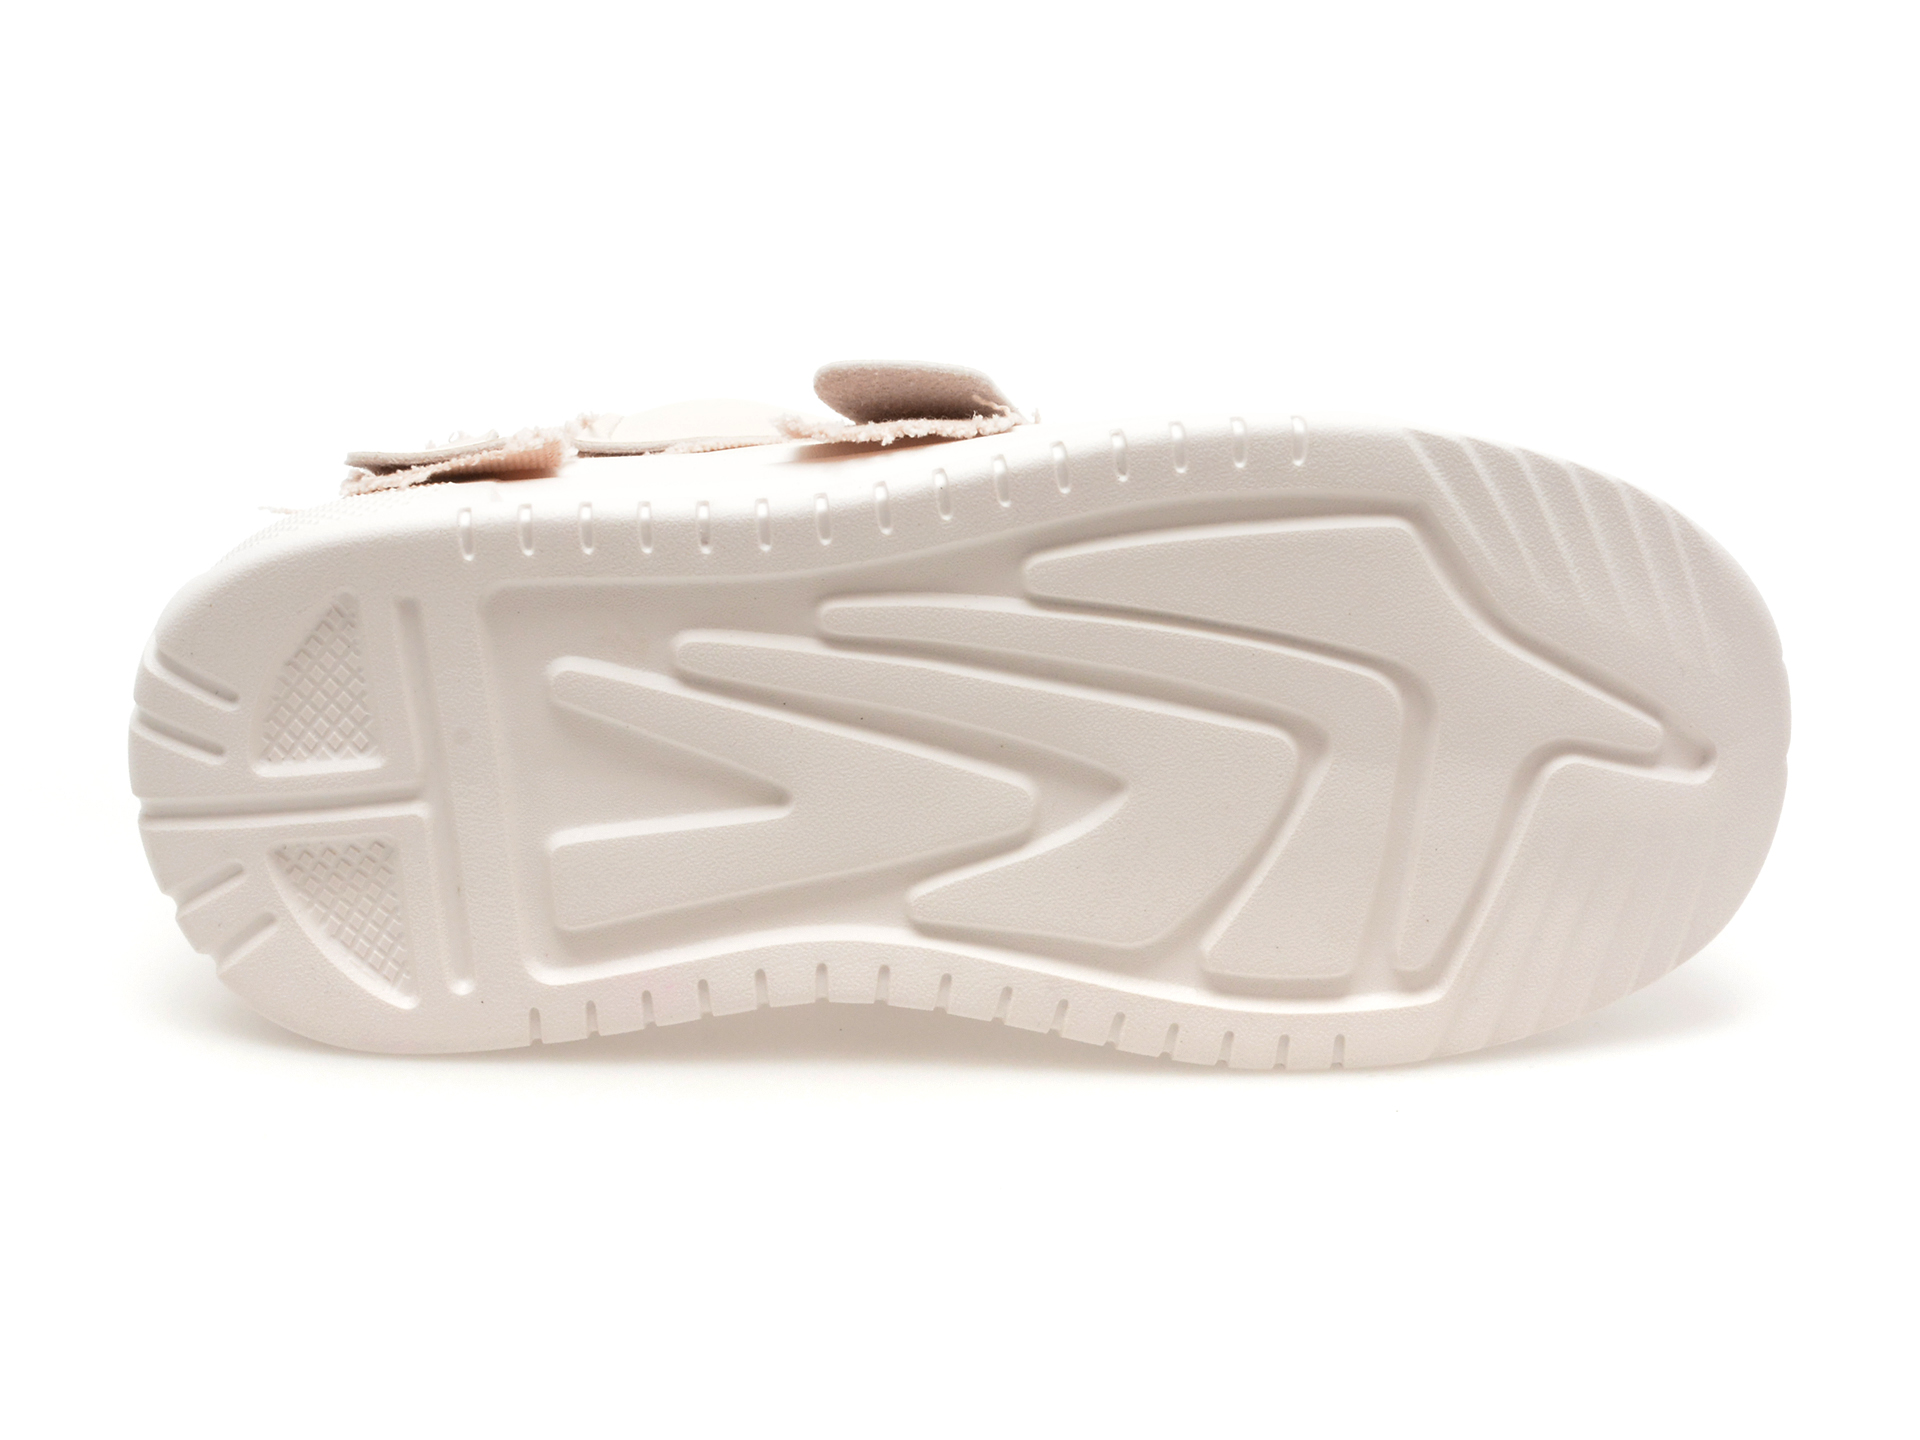 Pantofi Casual FLAVIA PASSINI albi, 231437, din piele naturala